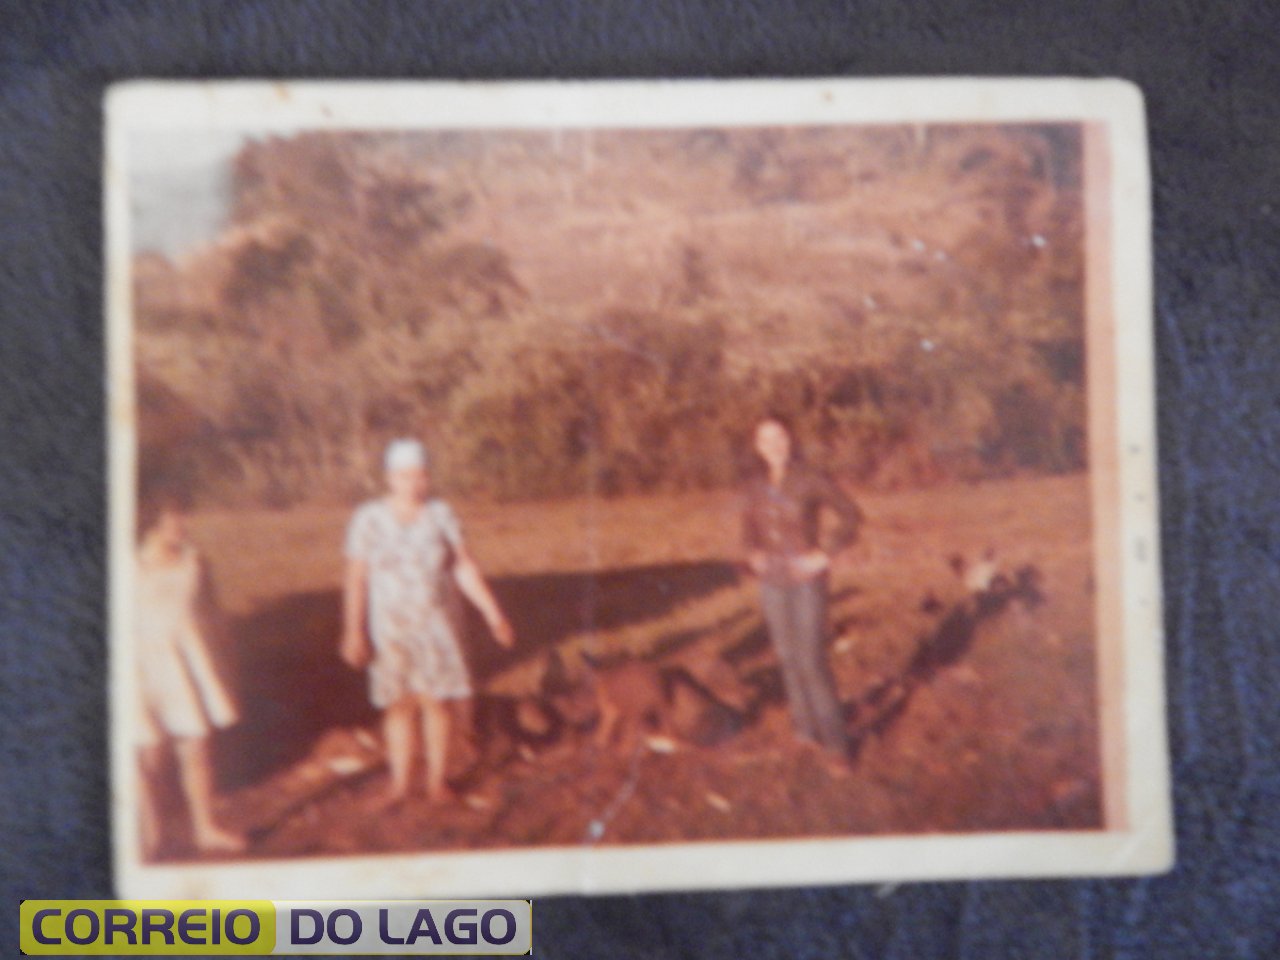 Maria Morelli Correia no centro tratando porcos na chácara da família em Vera Cruz do Oeste. A esquerda Marta e a direita Sônia Correia (prima). 1980.